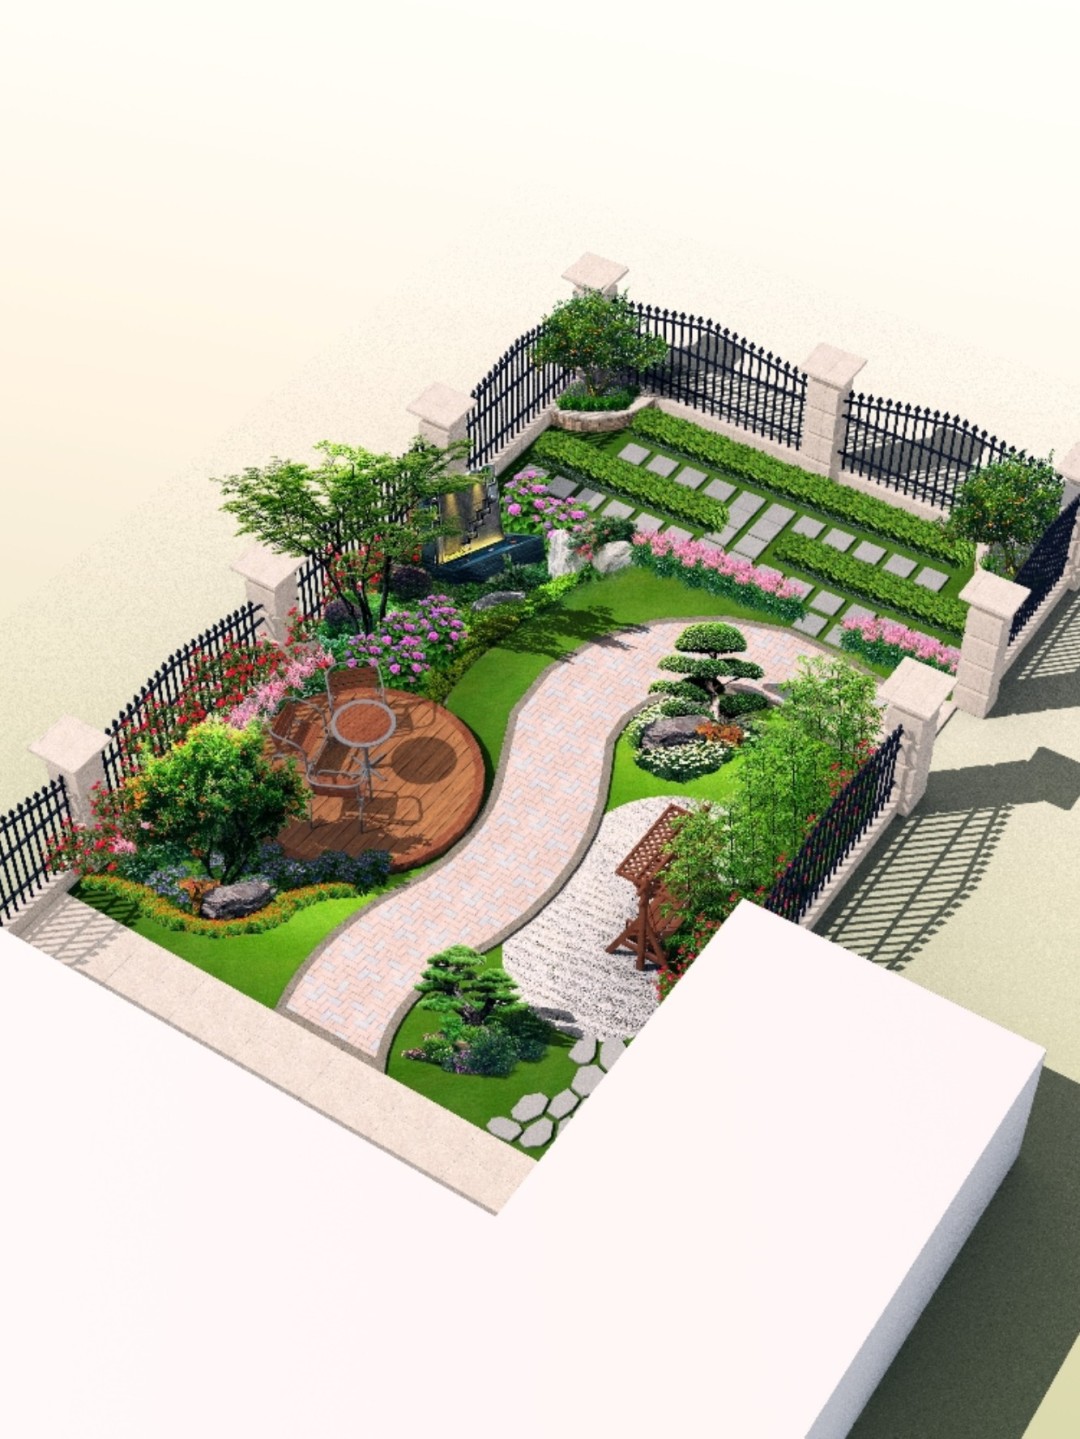 原创70㎡一楼小院改造:花了1000多块的设计图,一起分享给你